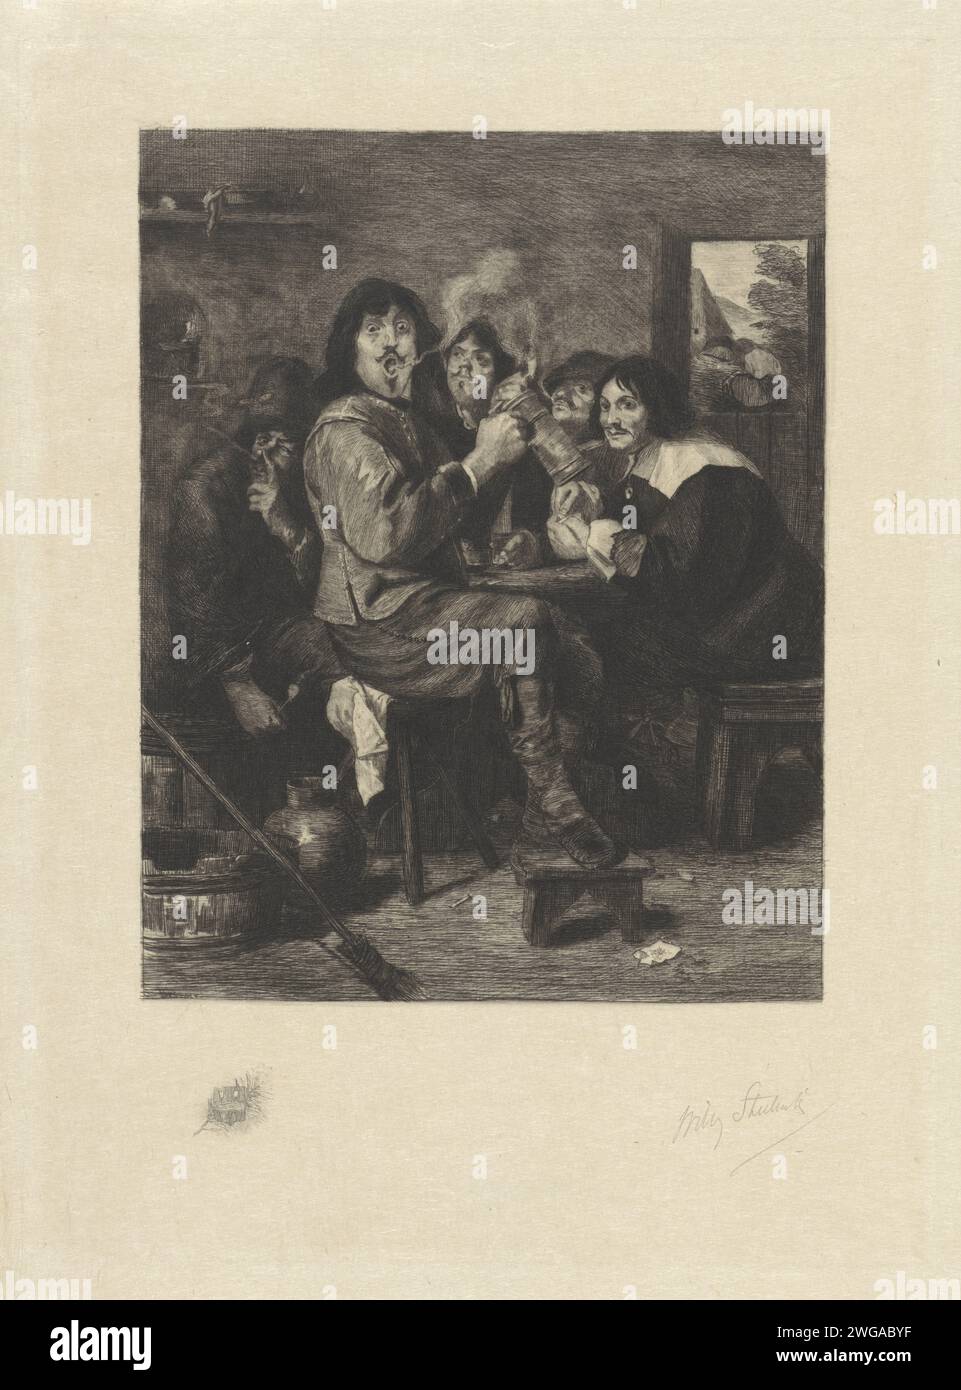 Herberg-Innenraum mit Rauchern, Willem Steelink (II), nach Adriaen Brouwer, 1888 - 1891 drucken, gibt es fünf Männer um einen Tisch in einem gasthaus, Rauchpfeife. Der Mann in der Mitte bläst Rauch aus und hält eine Kanne in der Hand. Unten links am Rand ein Wappen auf einem Zweig mit Blättern. Niederlande Papier Ätzpfeife  Tabak. Becher, Kanne (zur Verwendung als Trinkgefäß) Stockfoto